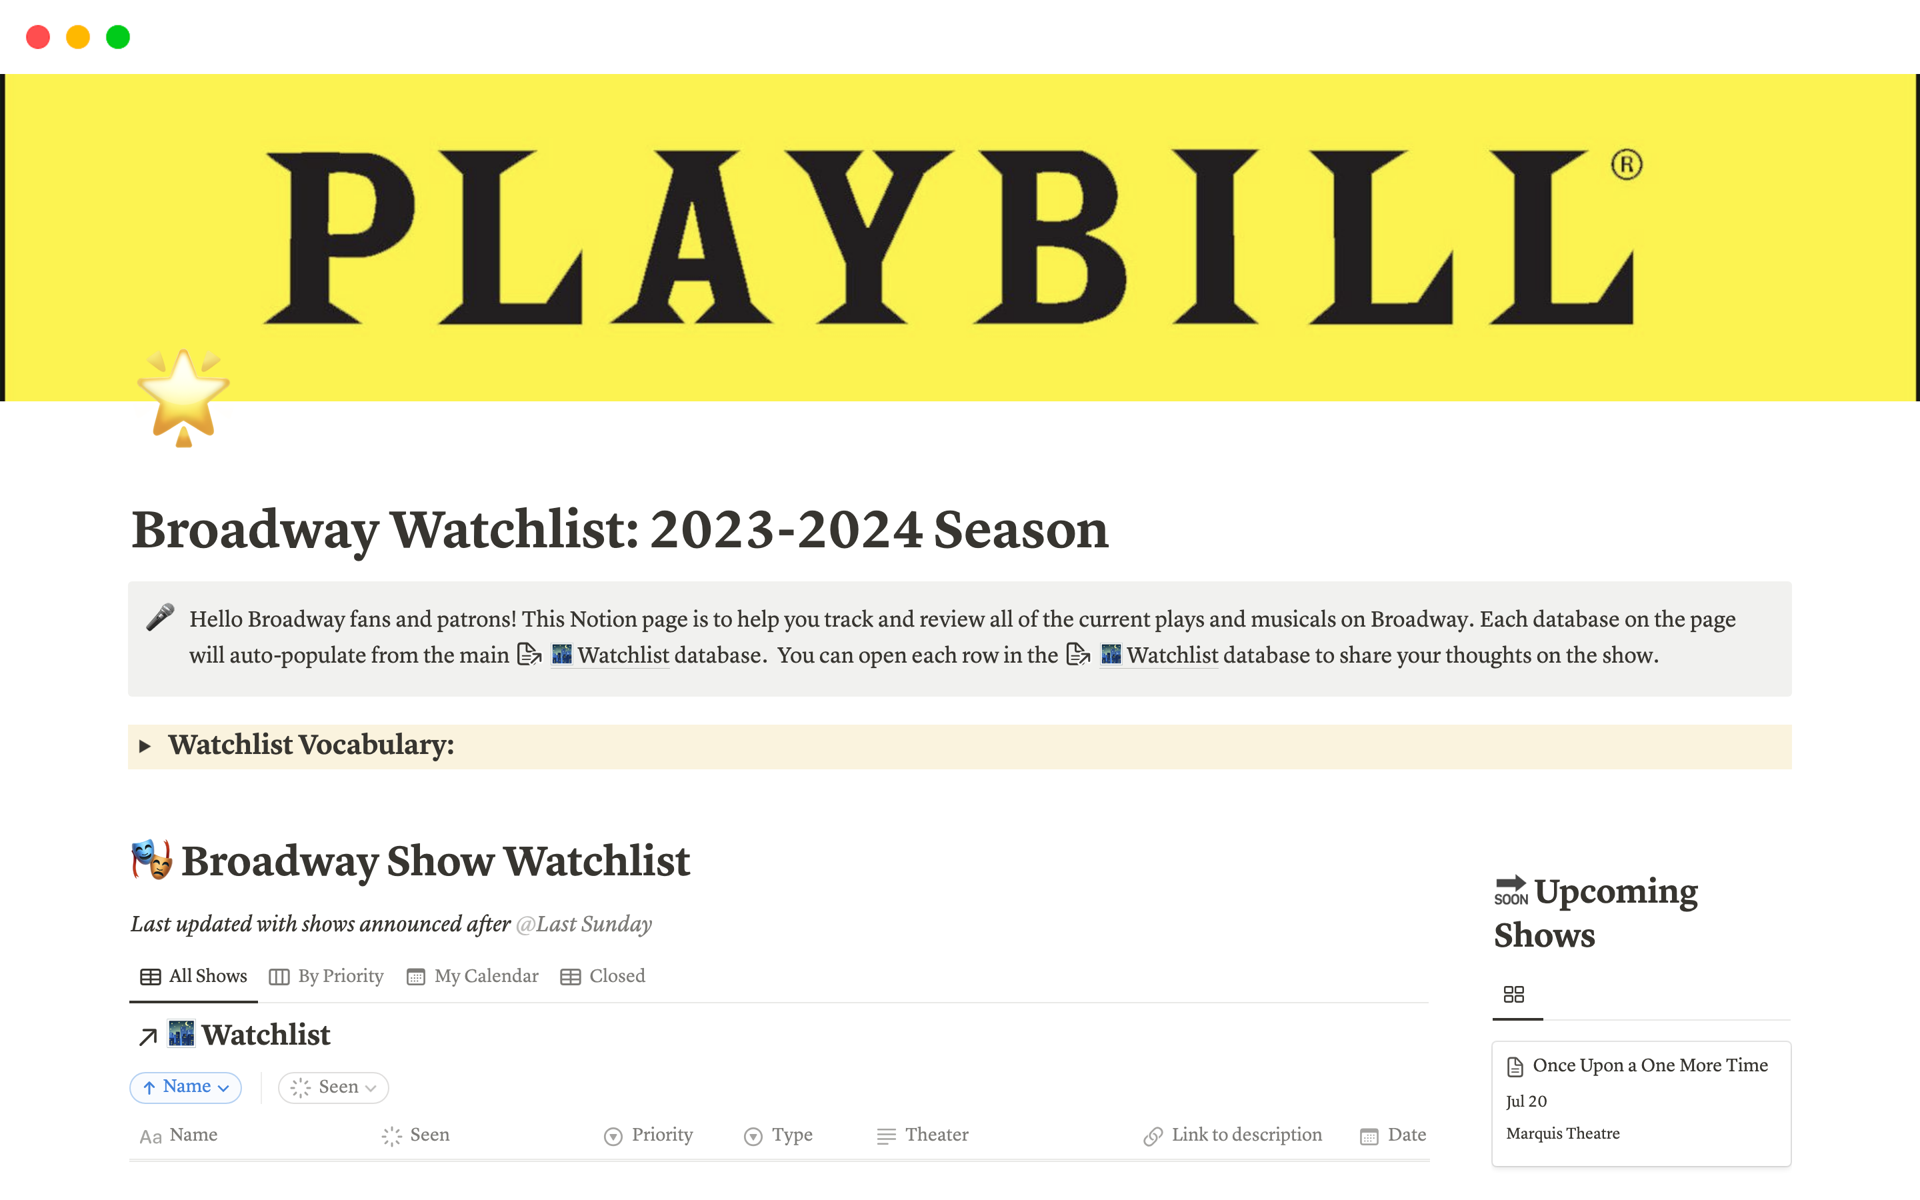 Broadway Watchlist: 2023-2024 Season님의 템플릿 미리보기